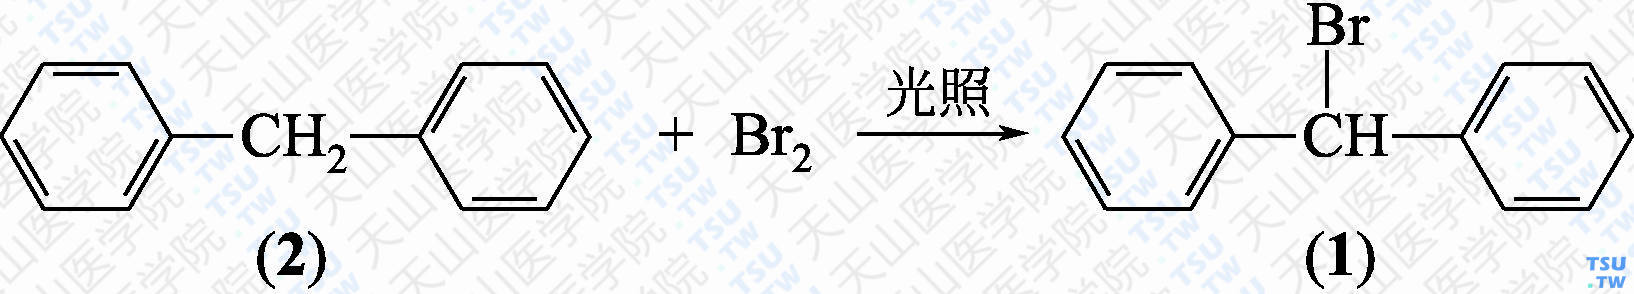 二苯基溴甲烷（分子式：C<sub>13</sub>H<sub>11</sub>Br）的合成方法路线及其结构式